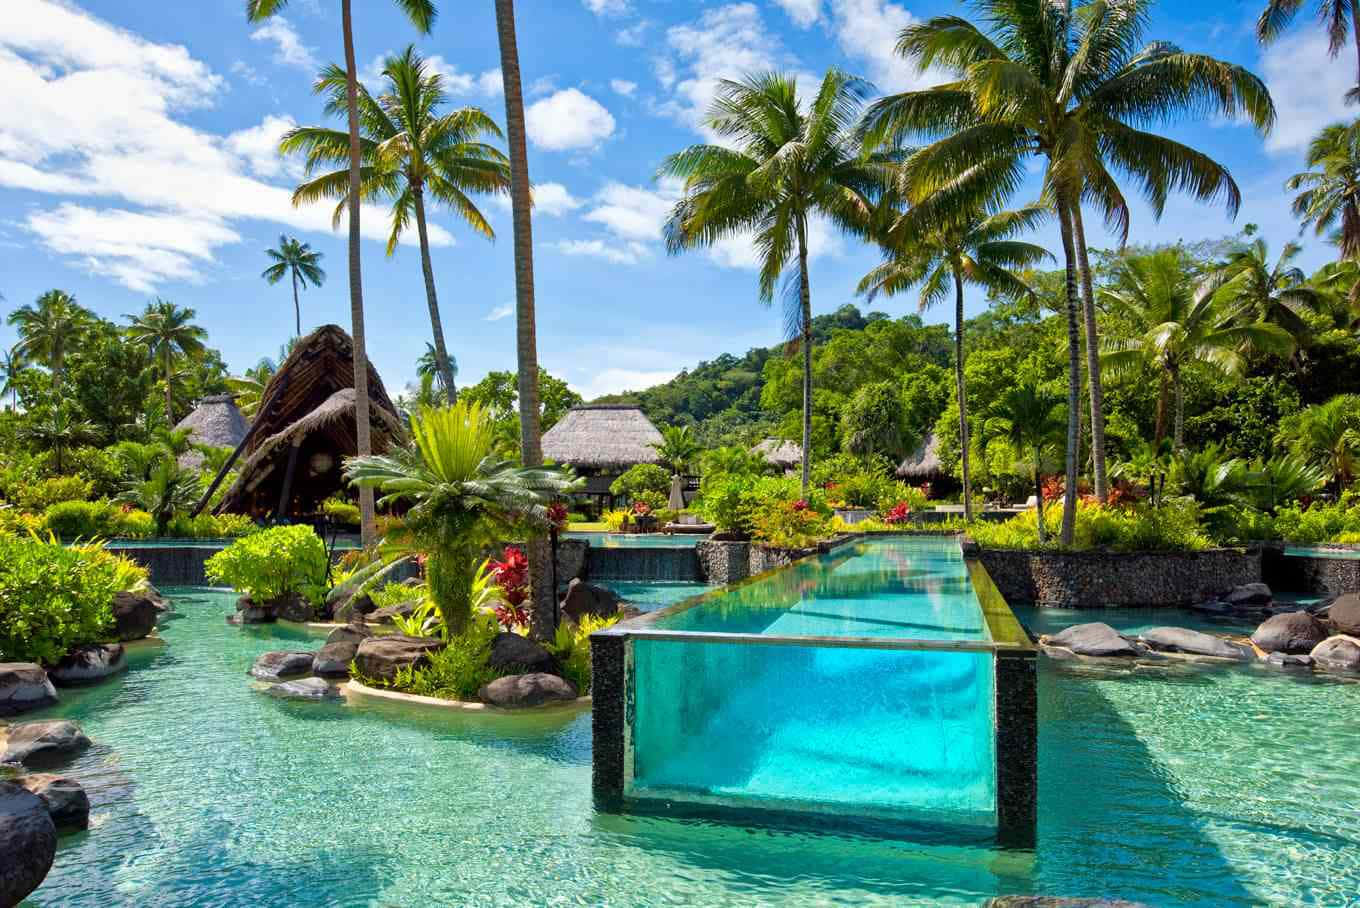 Imagemdo Resort De Luxo Na Ilha De Fiji.